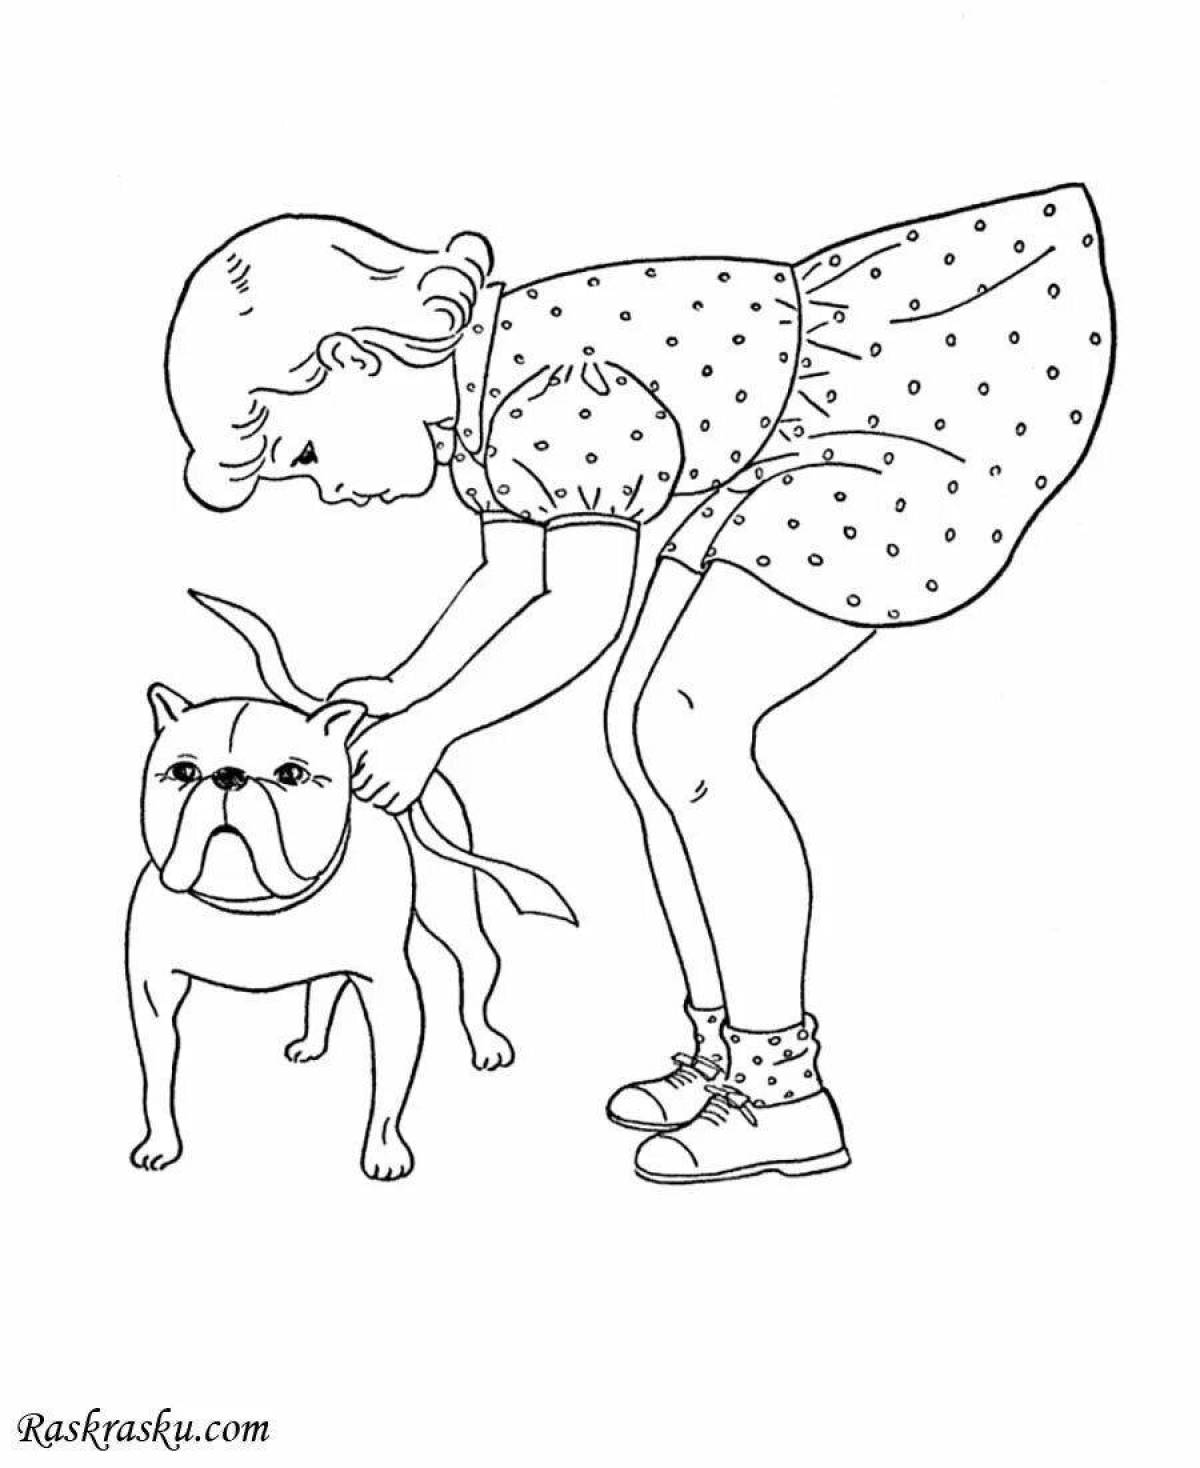 Раскраски собак и щенков: 48 разукрашек для детей 4-12 лет